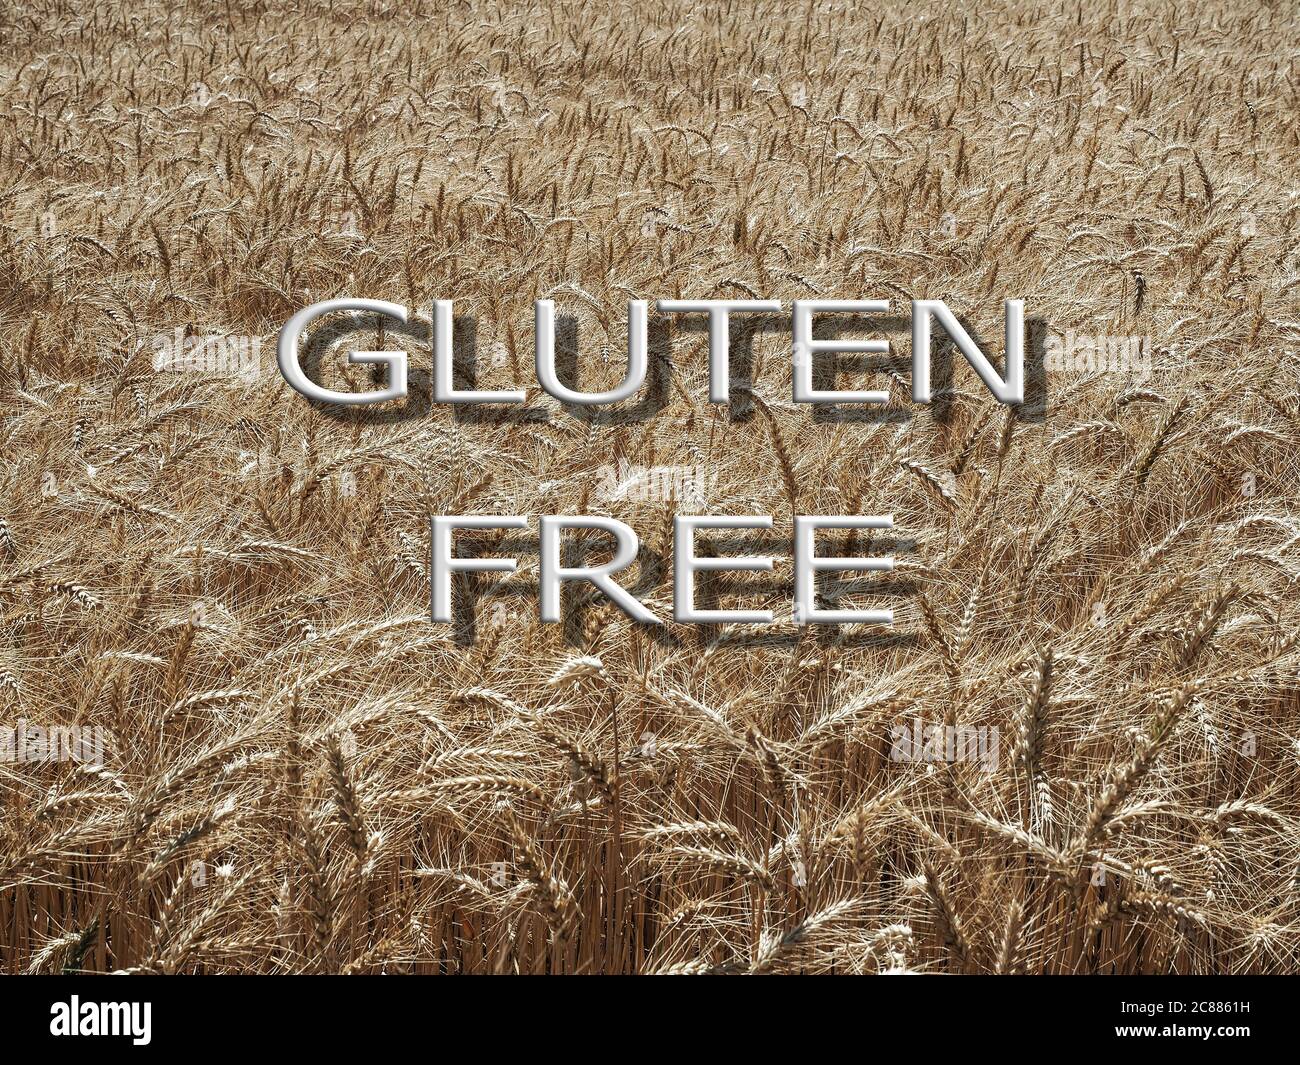 Gluten free diet concept. Text gluten free on wheat field background. Stock Photo